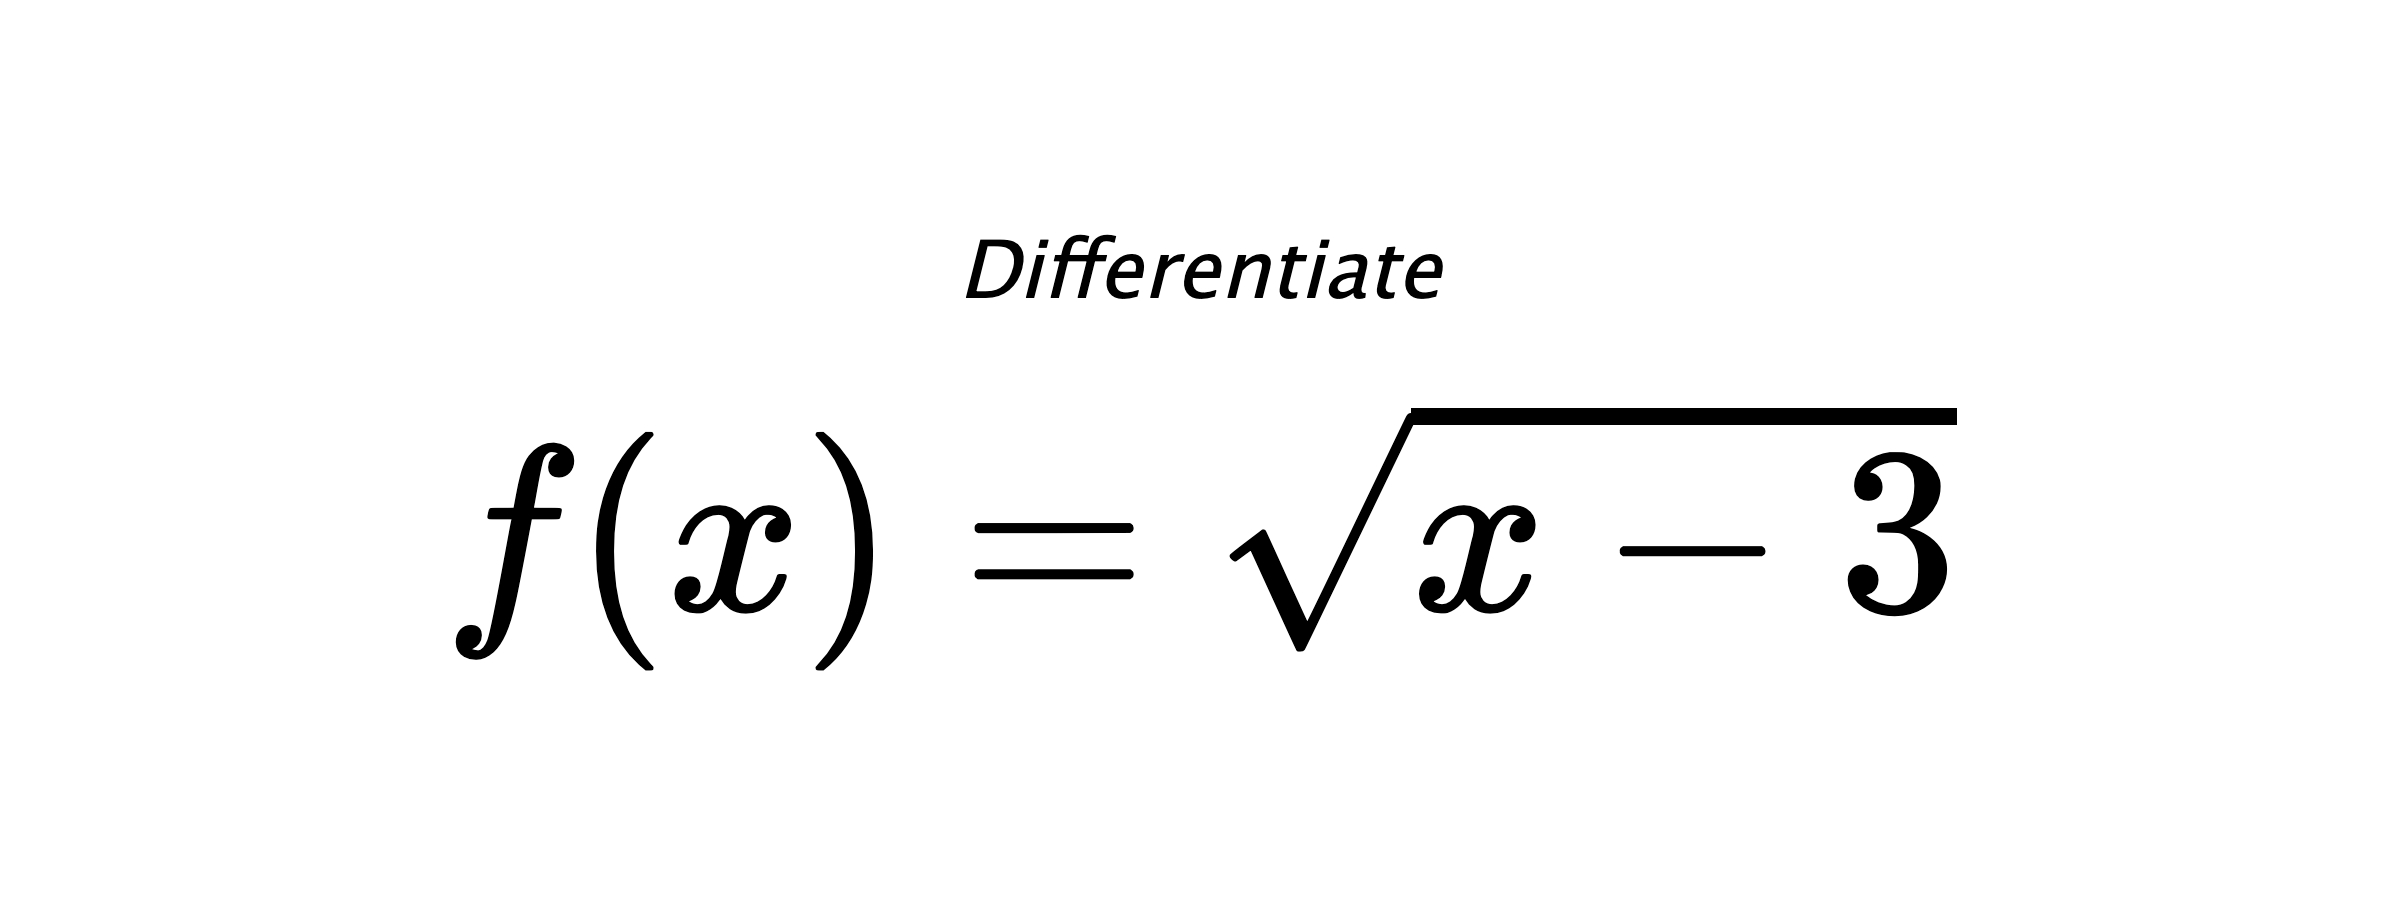 Differentiate $ f(x) = \sqrt{x - 3} $